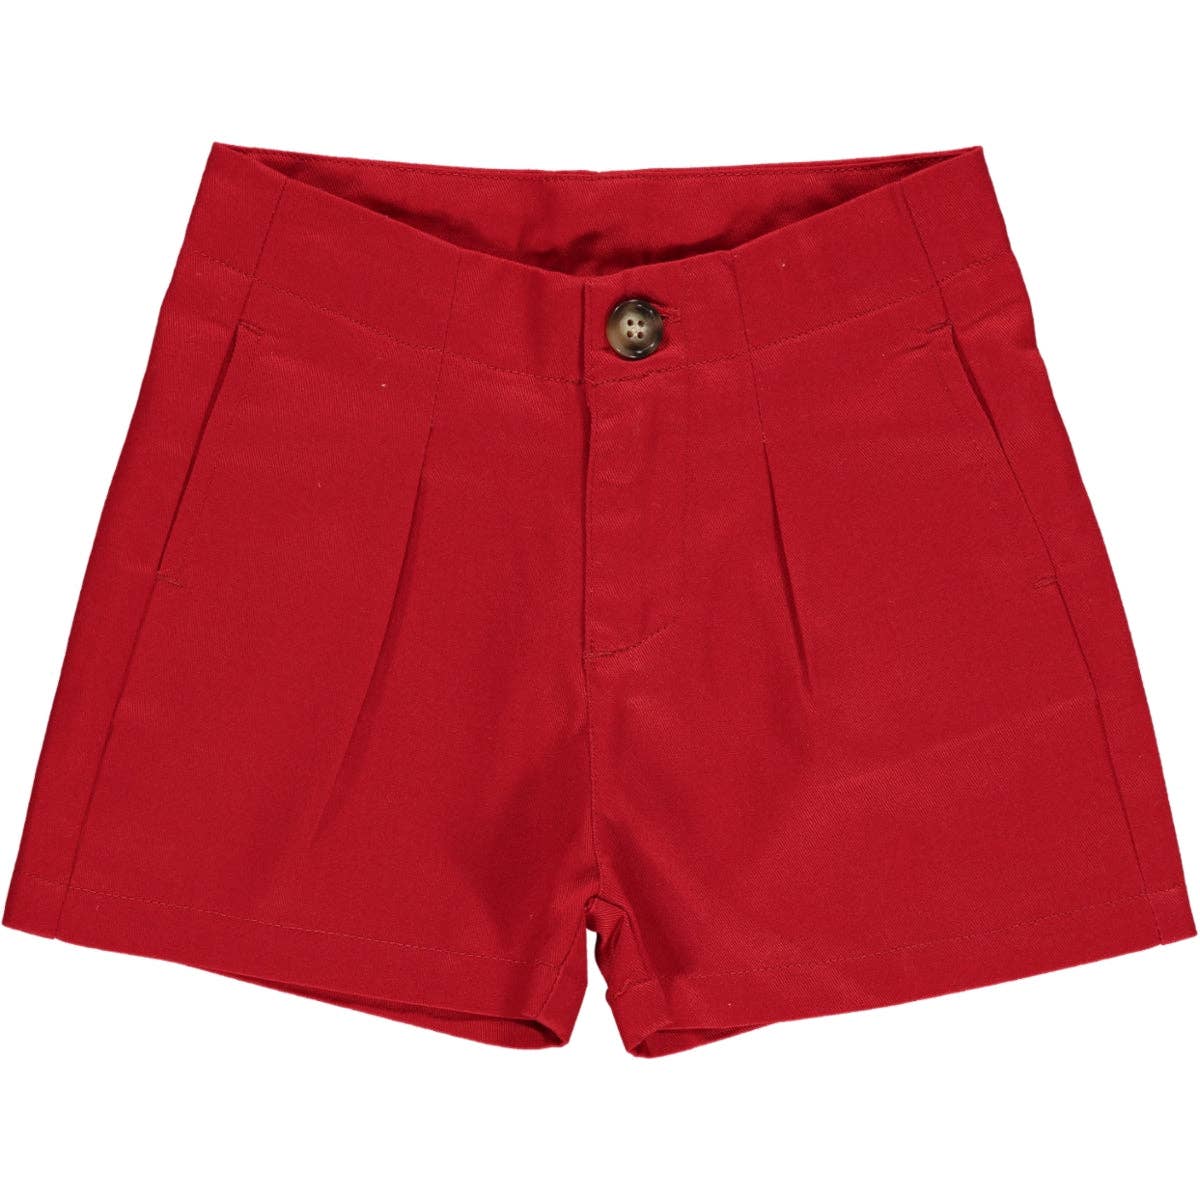 *Hattie Shorts In Red